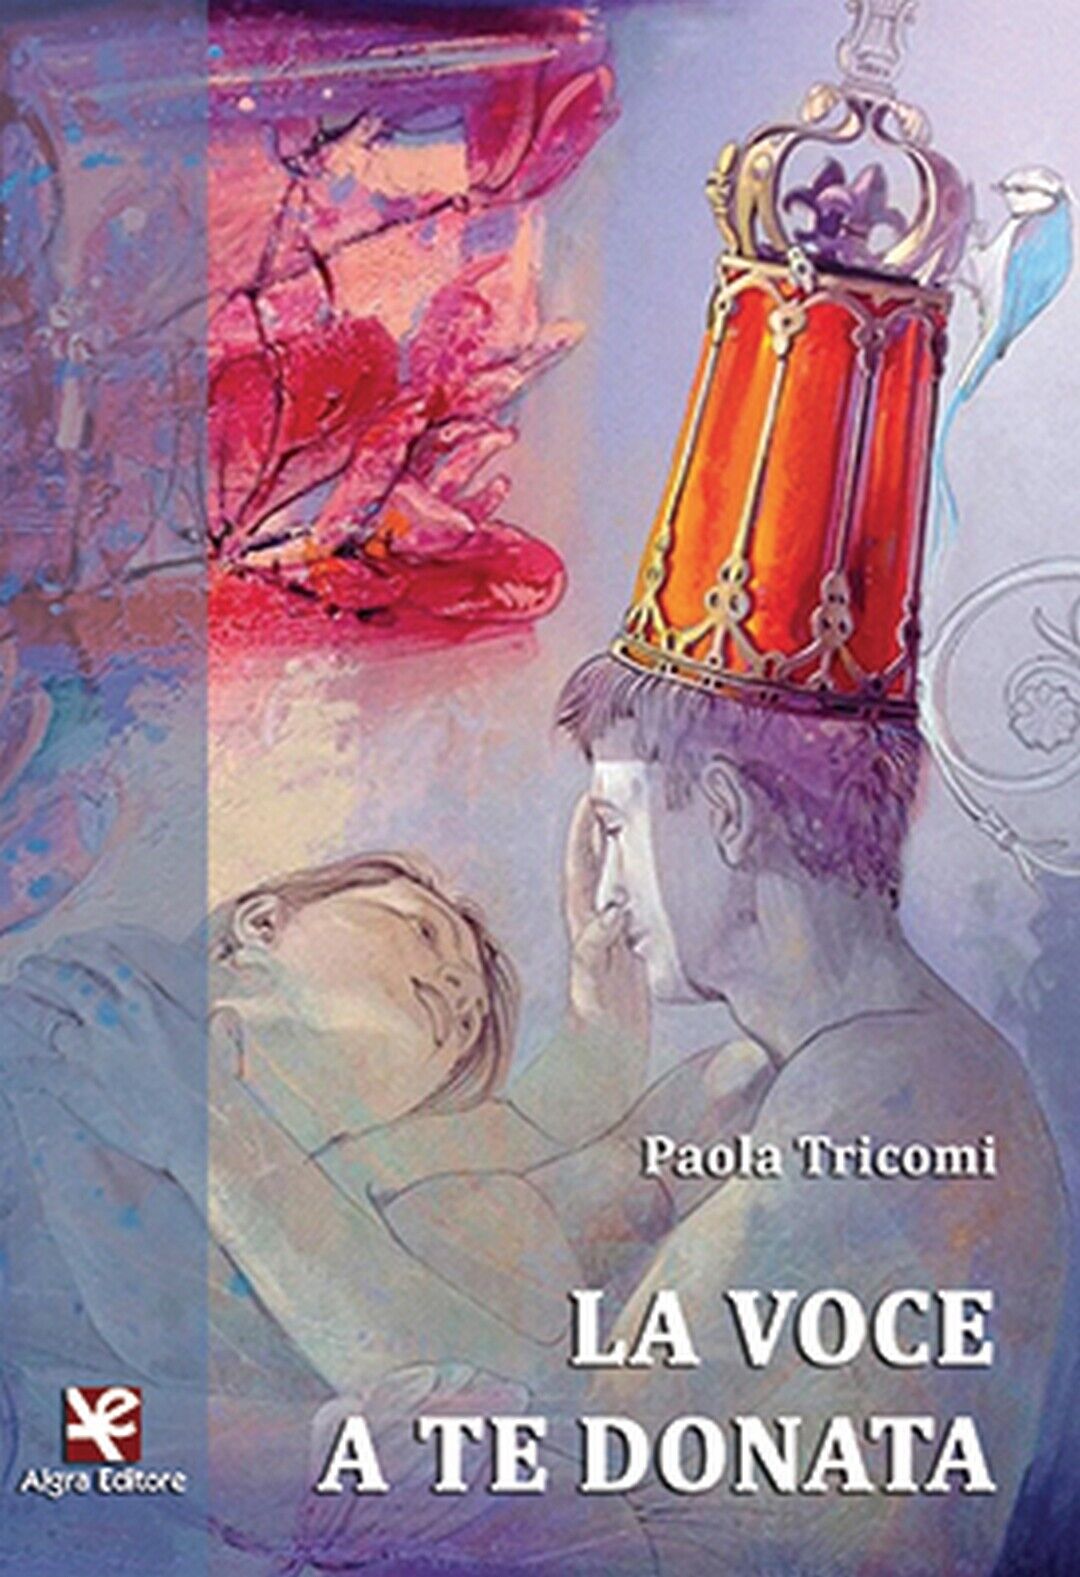 La voce a te donata  di Paola Tricomi,  Algra Editore